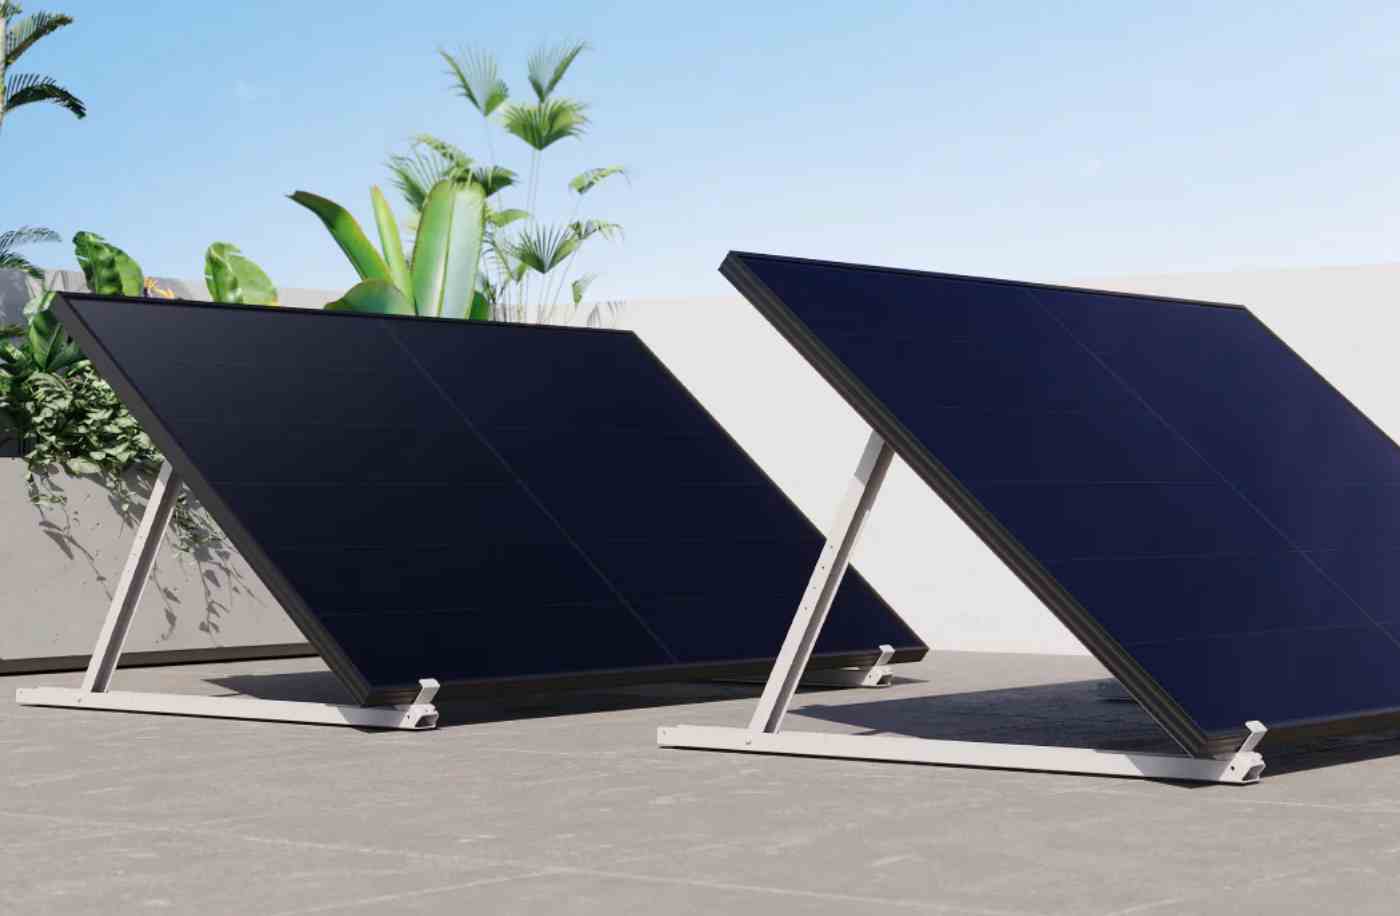 Wie können Balkonkraftwerke Solaranlagen auf Dächern ergänzen?